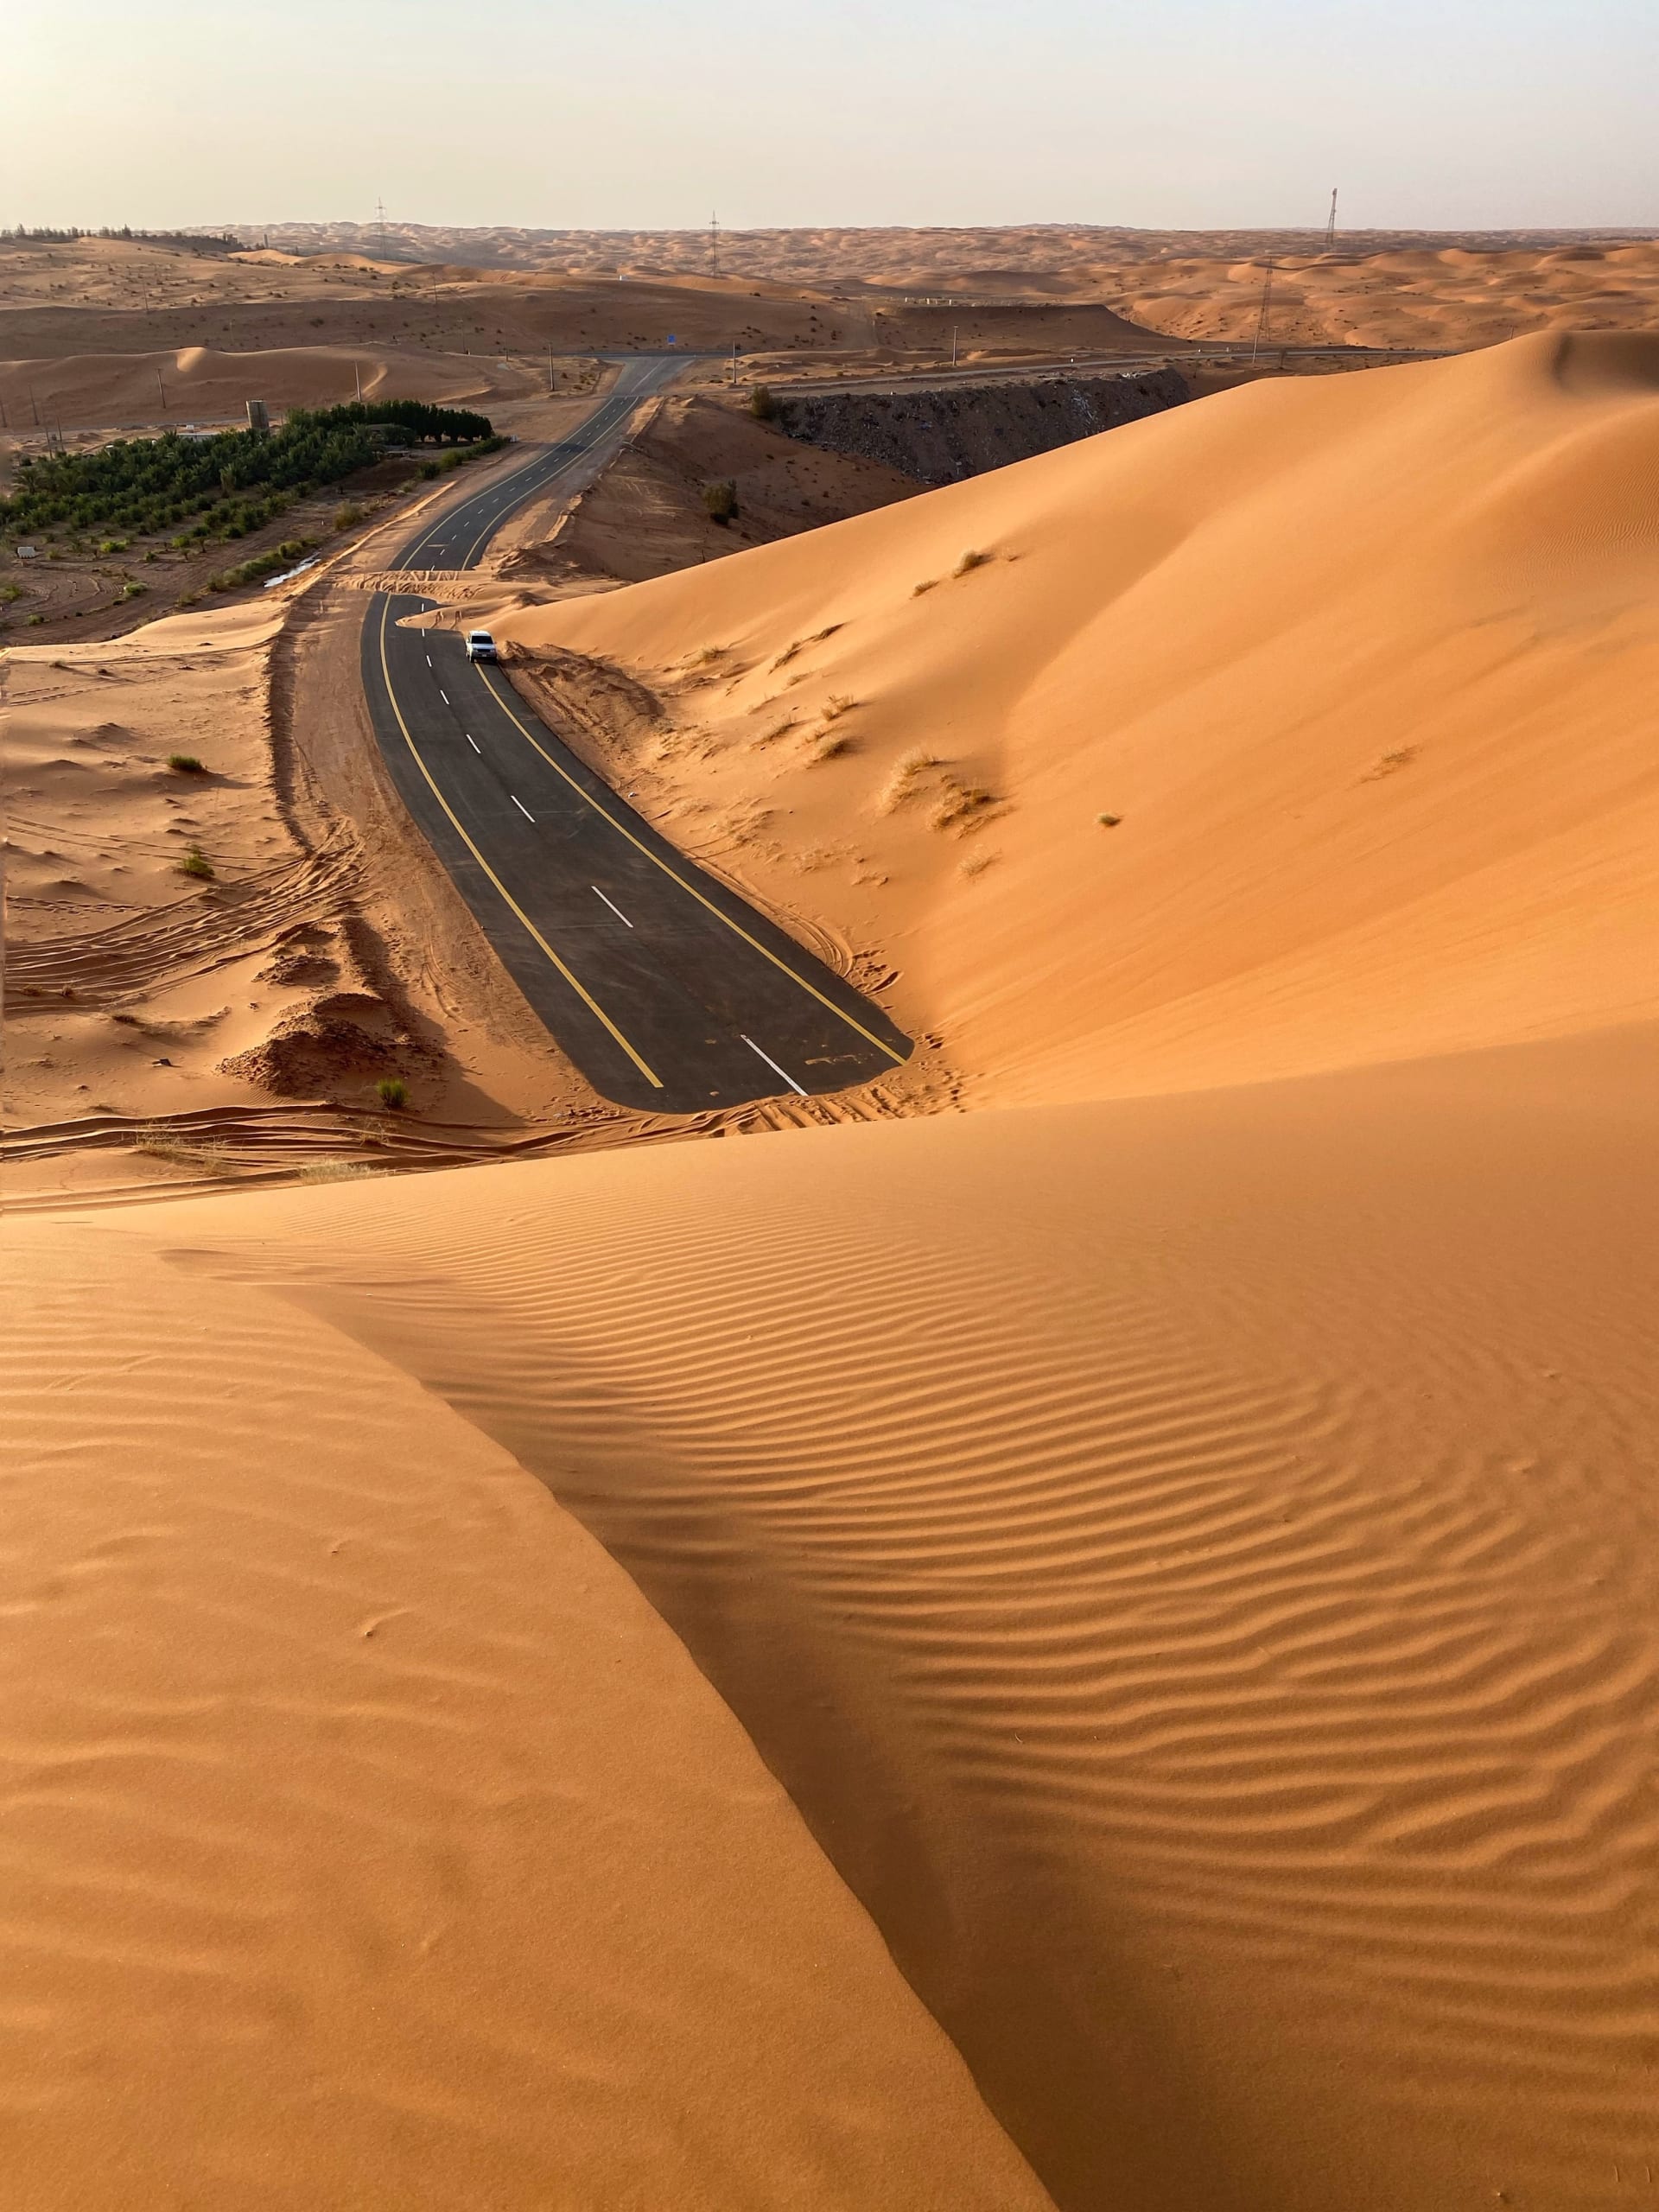 En Arabia Saudita, un fotógrafo documenta un encantador paseo al final de un camino cubierto de arena dorada